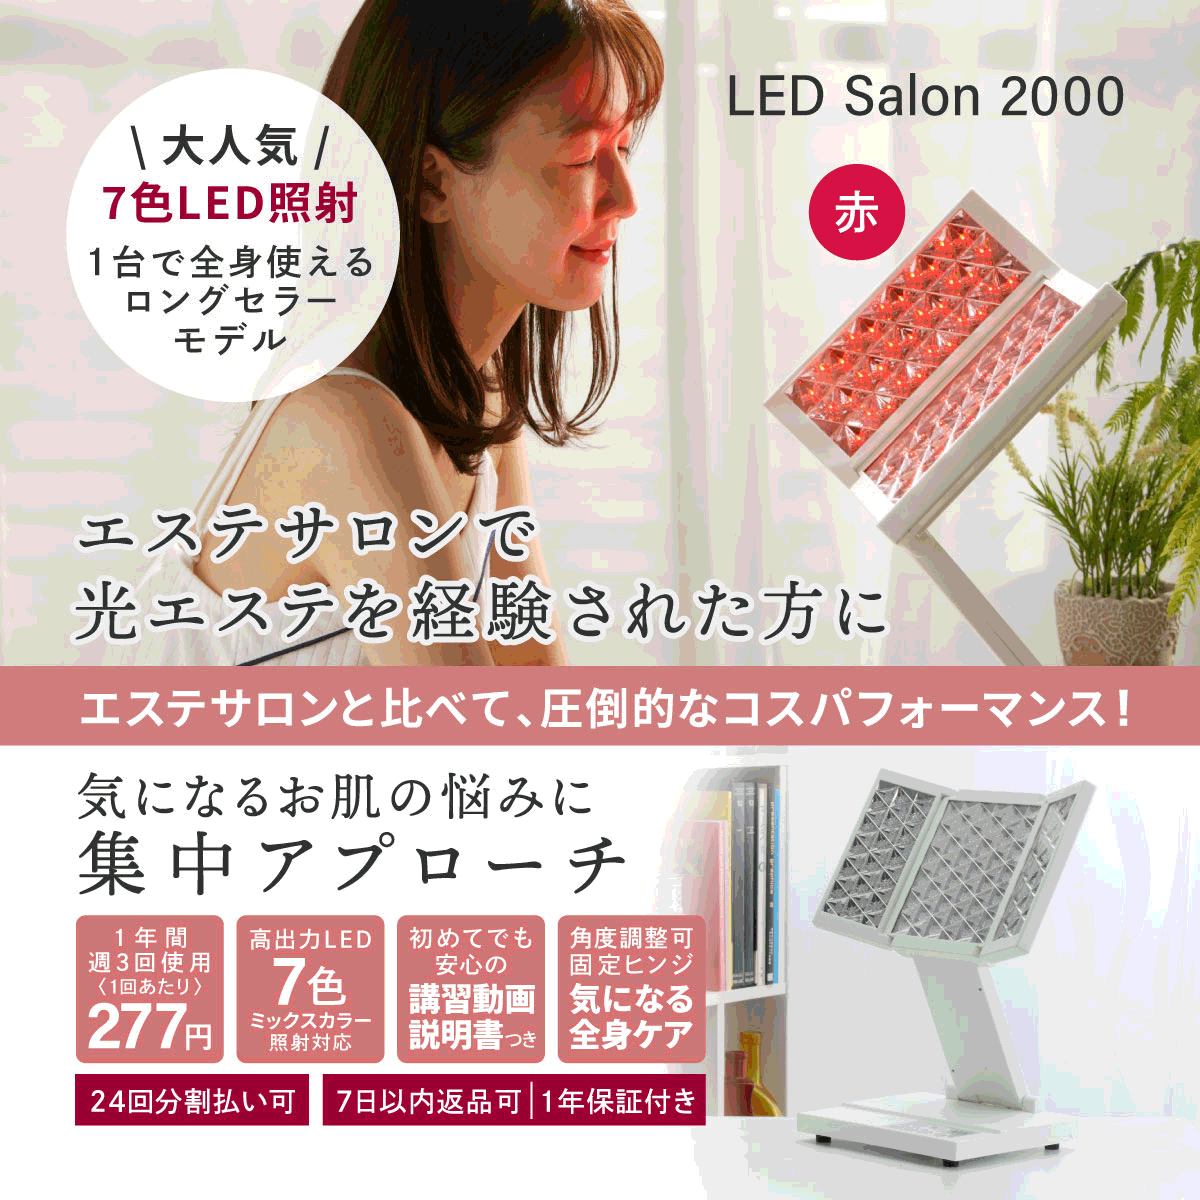 LED美顔器 LED Salon 2000 エステ 光美容器 LED エイジングケア コラーゲンマシン 美肌 全身ケア ニキビ